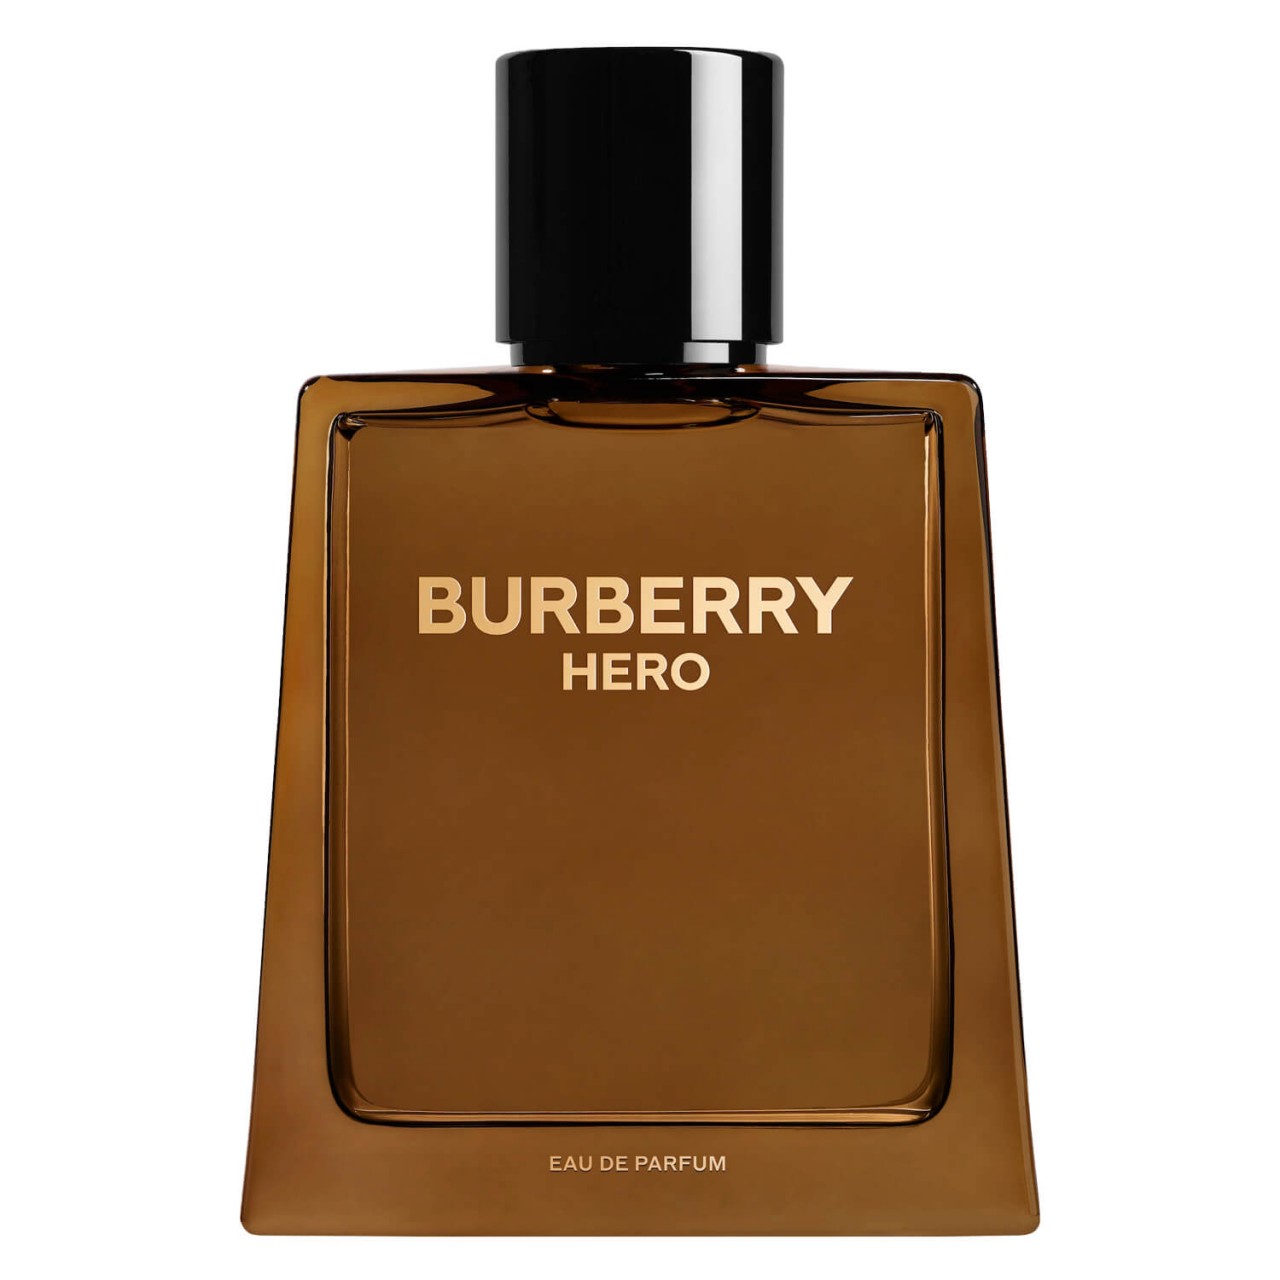 Burberry Hero - Eau de Parfum von Burberry